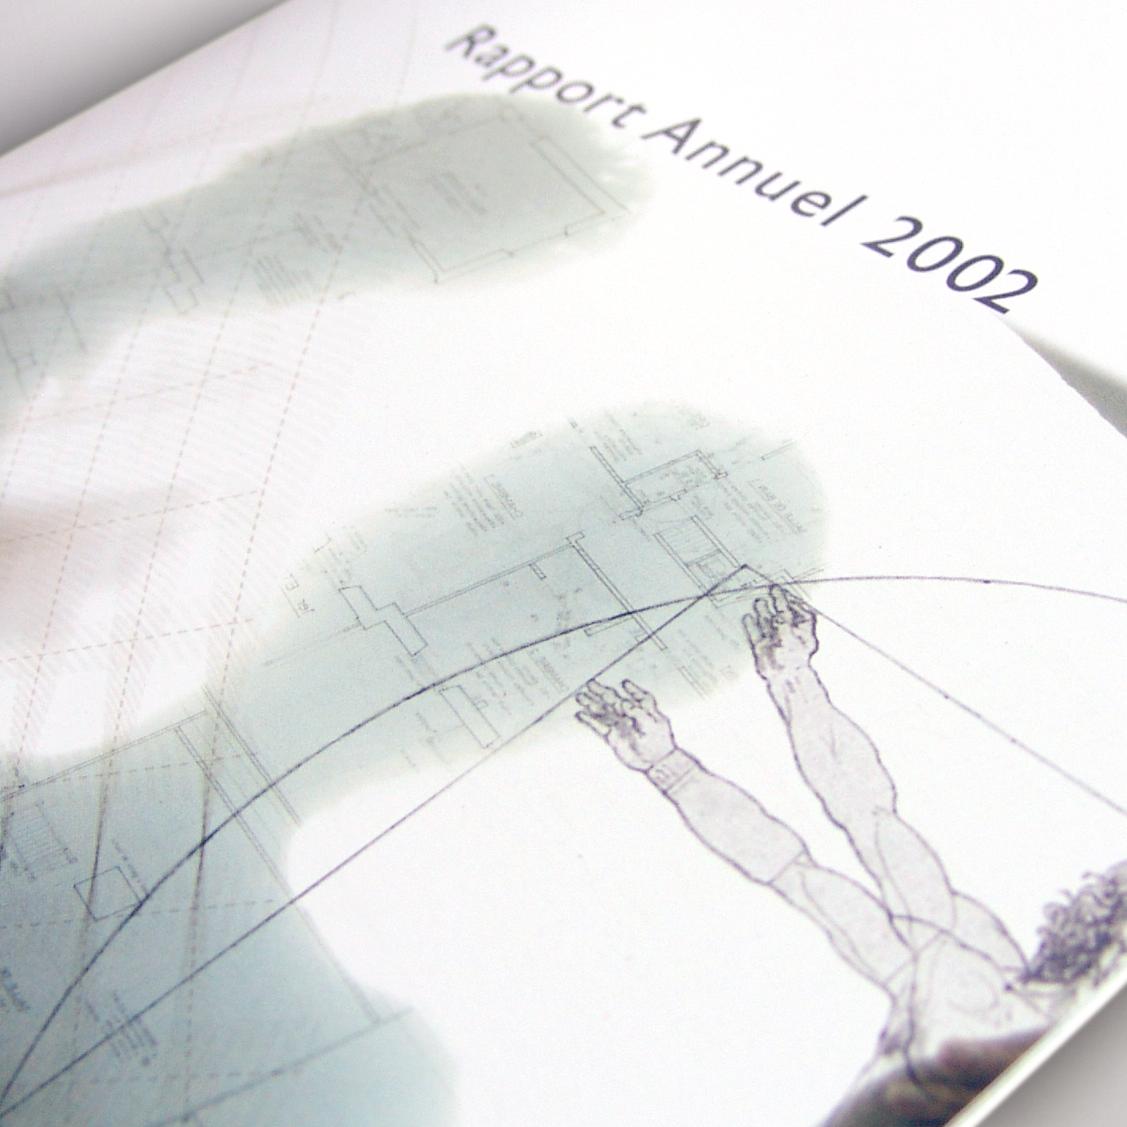 ANEC - Annual Report 2002